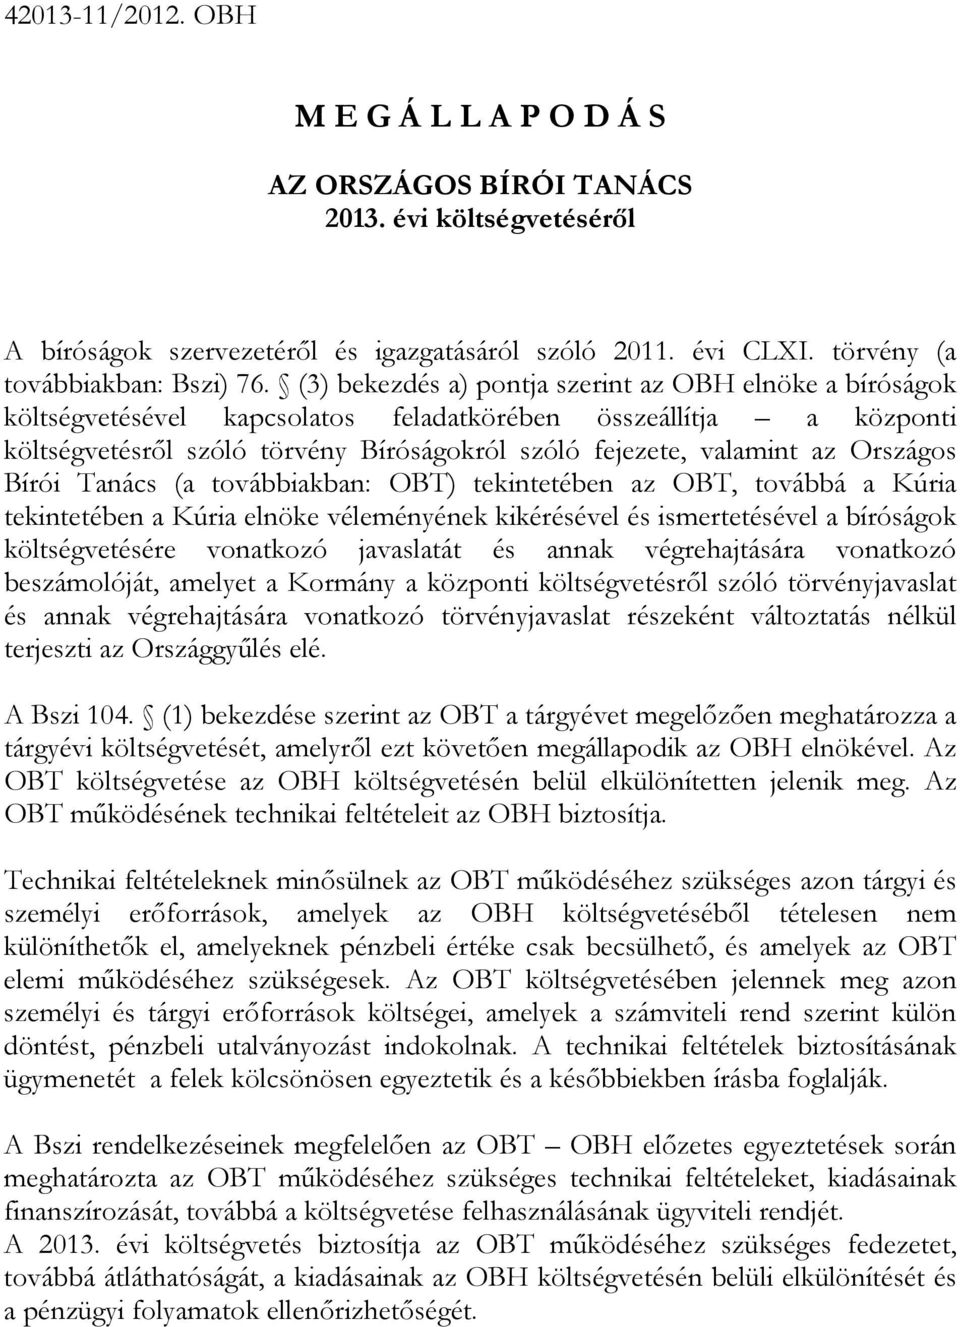 Országos Bírói Tanács (a továbbiakban: OBT) tekintetében az OBT, továbbá a Kúria tekintetében a Kúria elnöke véleményének kikérésével és ismertetésével a bíróságok költségvetésére vonatkozó